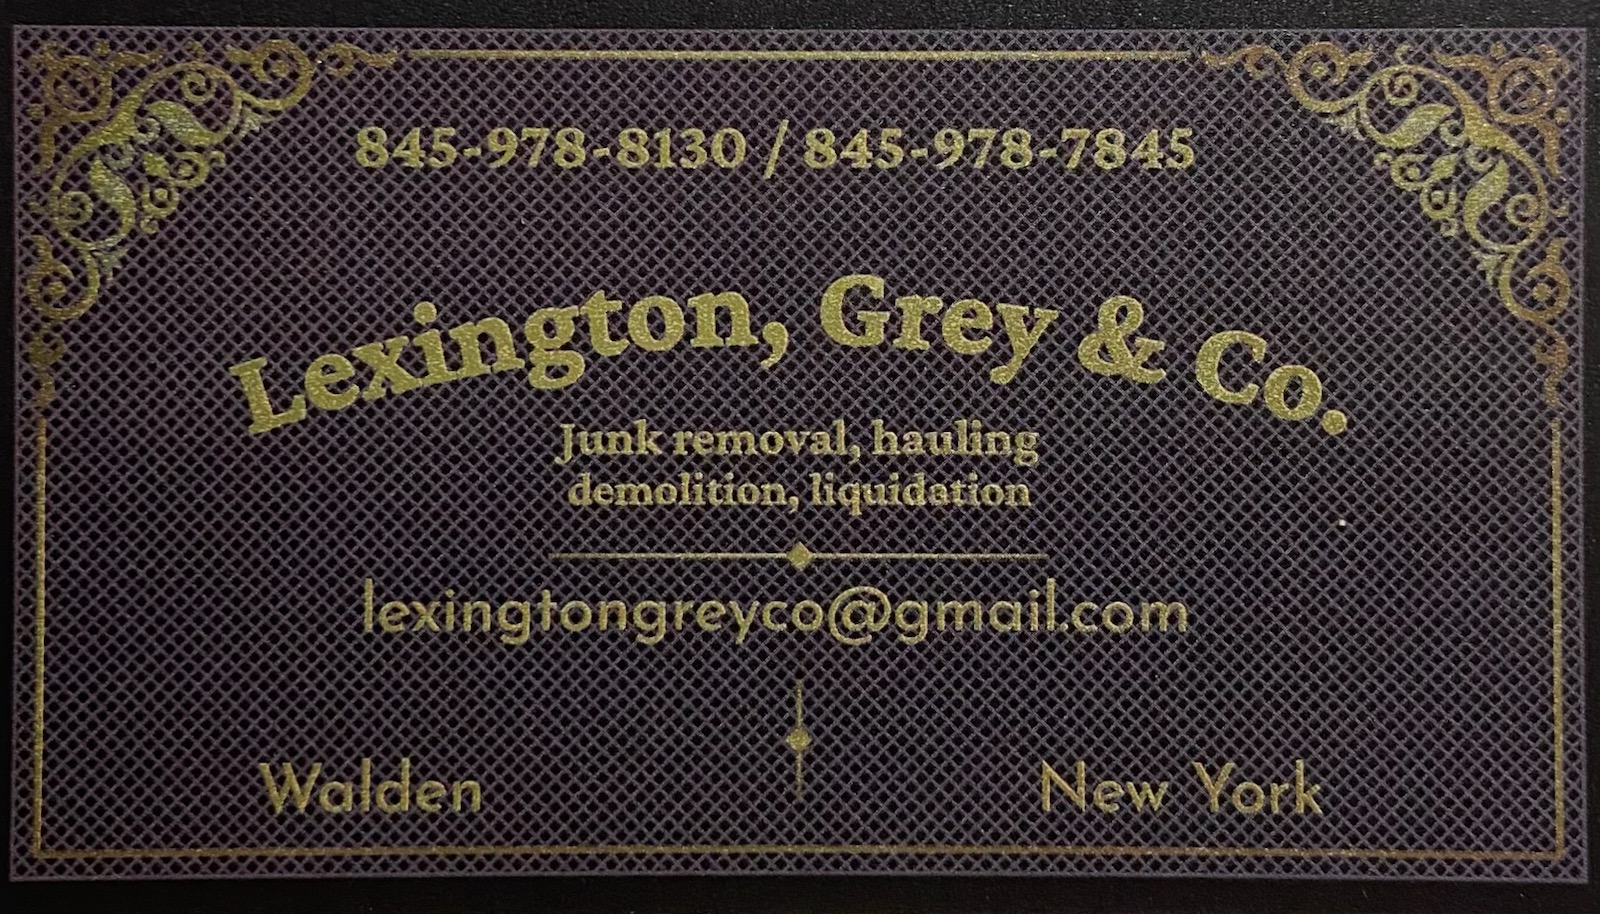 Lexington, Grey and Co. | AuctionNinja